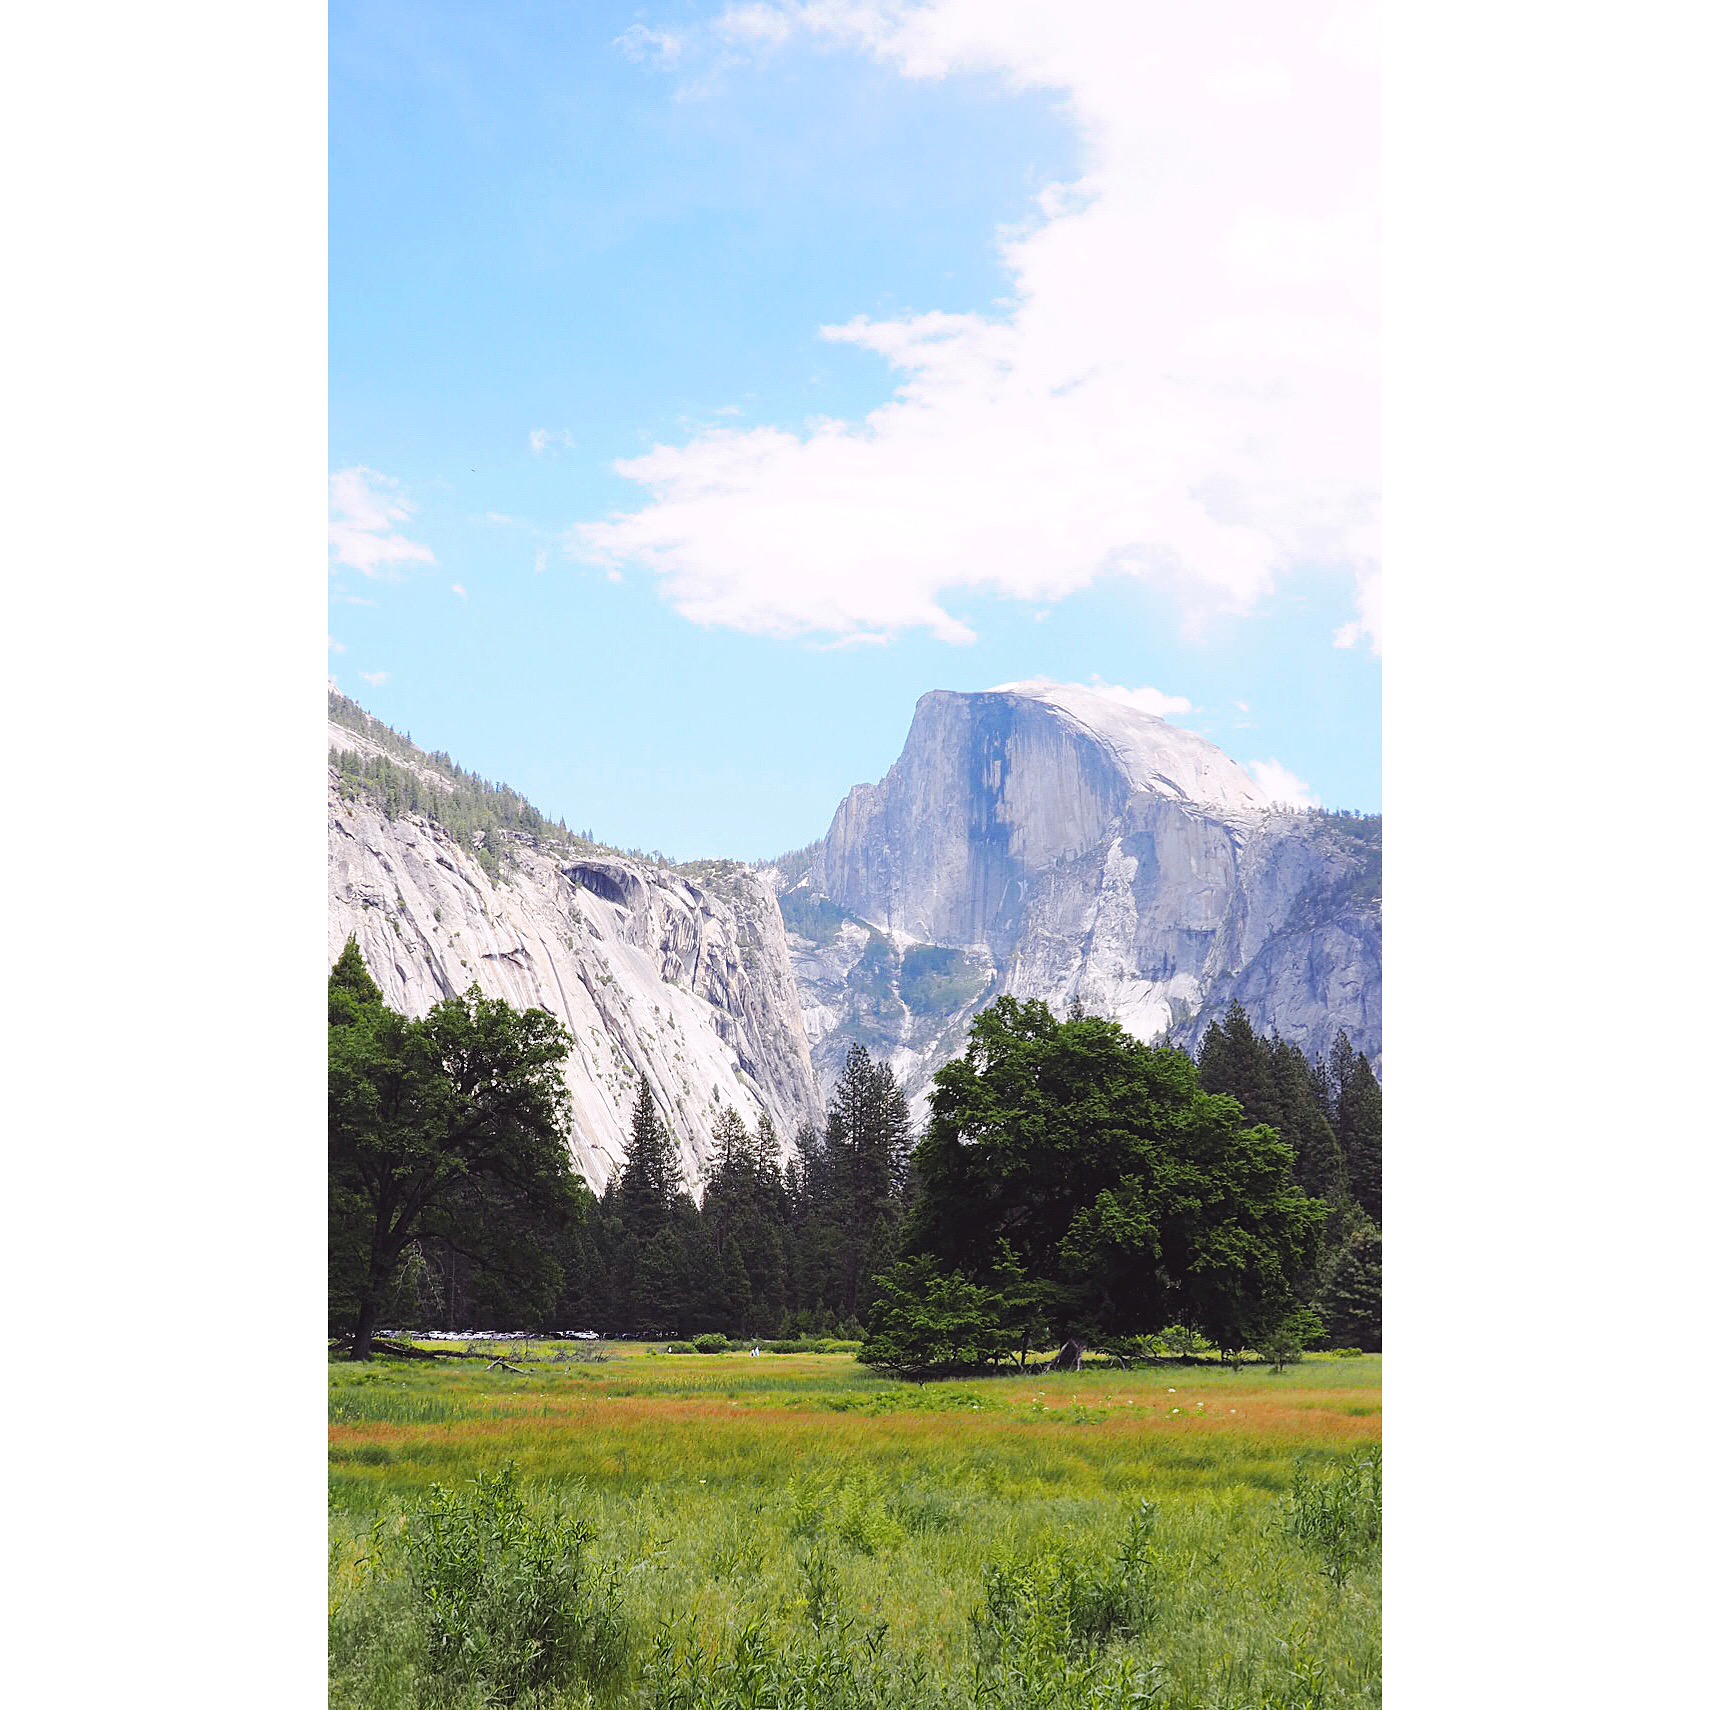 Californian Road Trip Yosemite